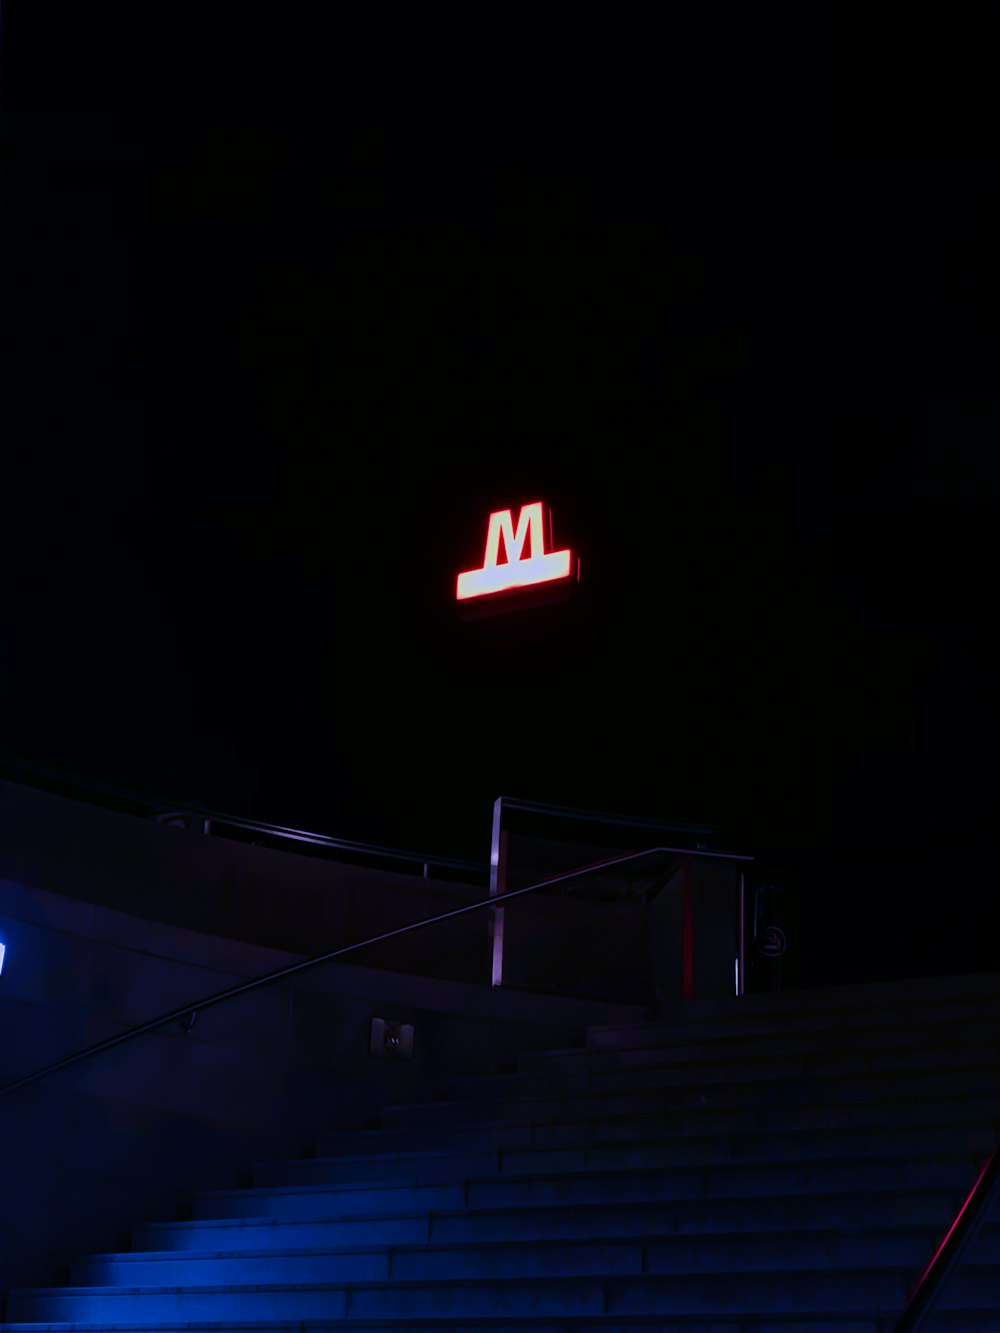 LED M signage